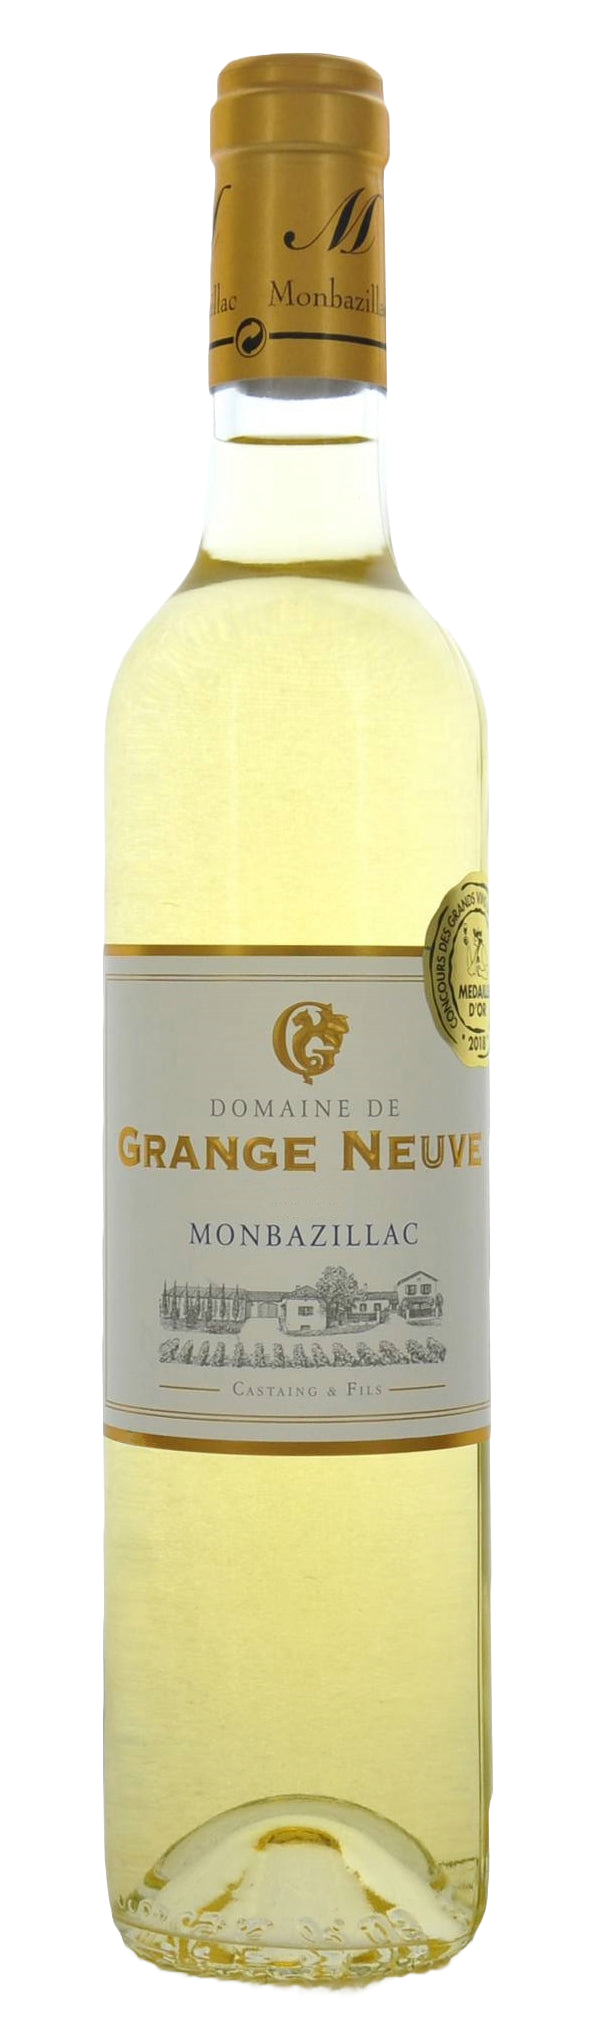 Domaine de Grange Neuve Monbazillac 2019 50cl